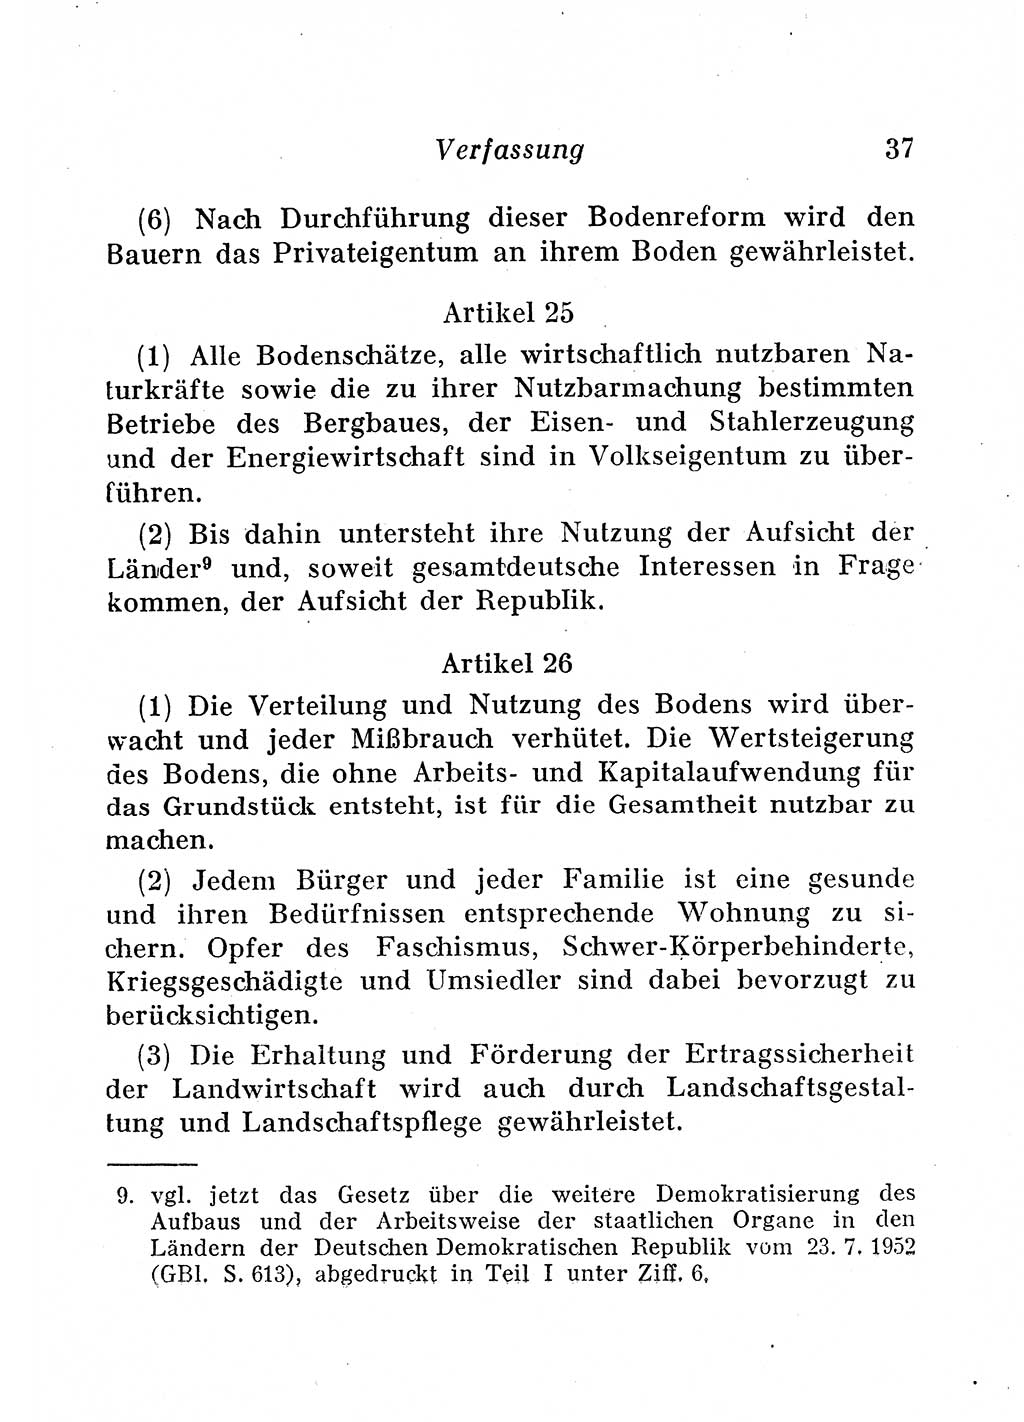 Staats- und verwaltungsrechtliche Gesetze der Deutschen Demokratischen Republik (DDR) 1958, Seite 37 (StVerwR Ges. DDR 1958, S. 37)